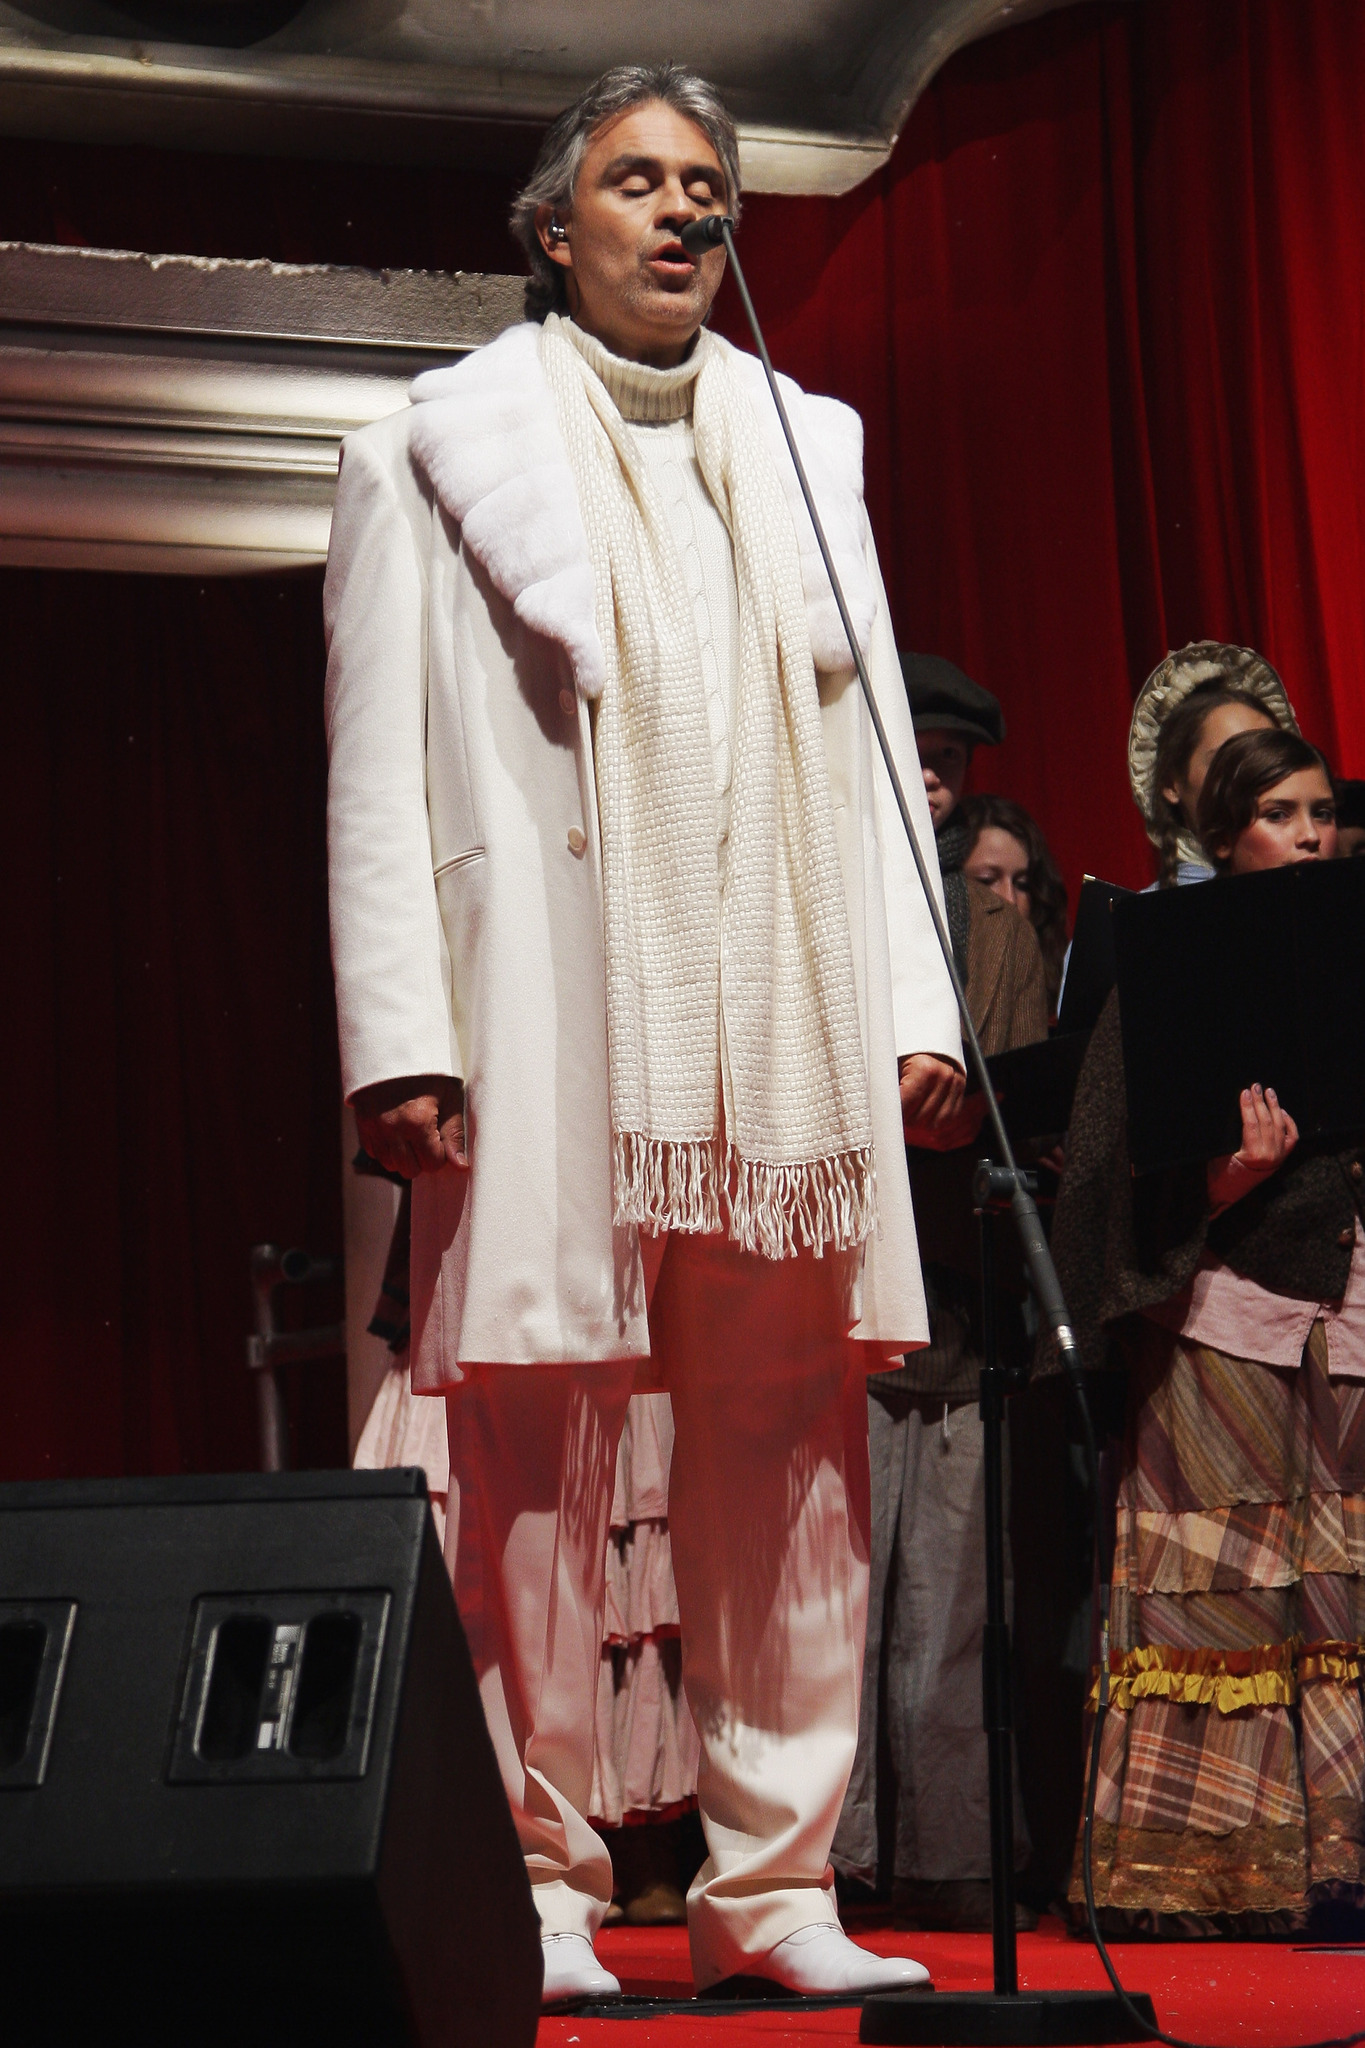 Andrea Bocelli at event of Kaledu giesme (2009)